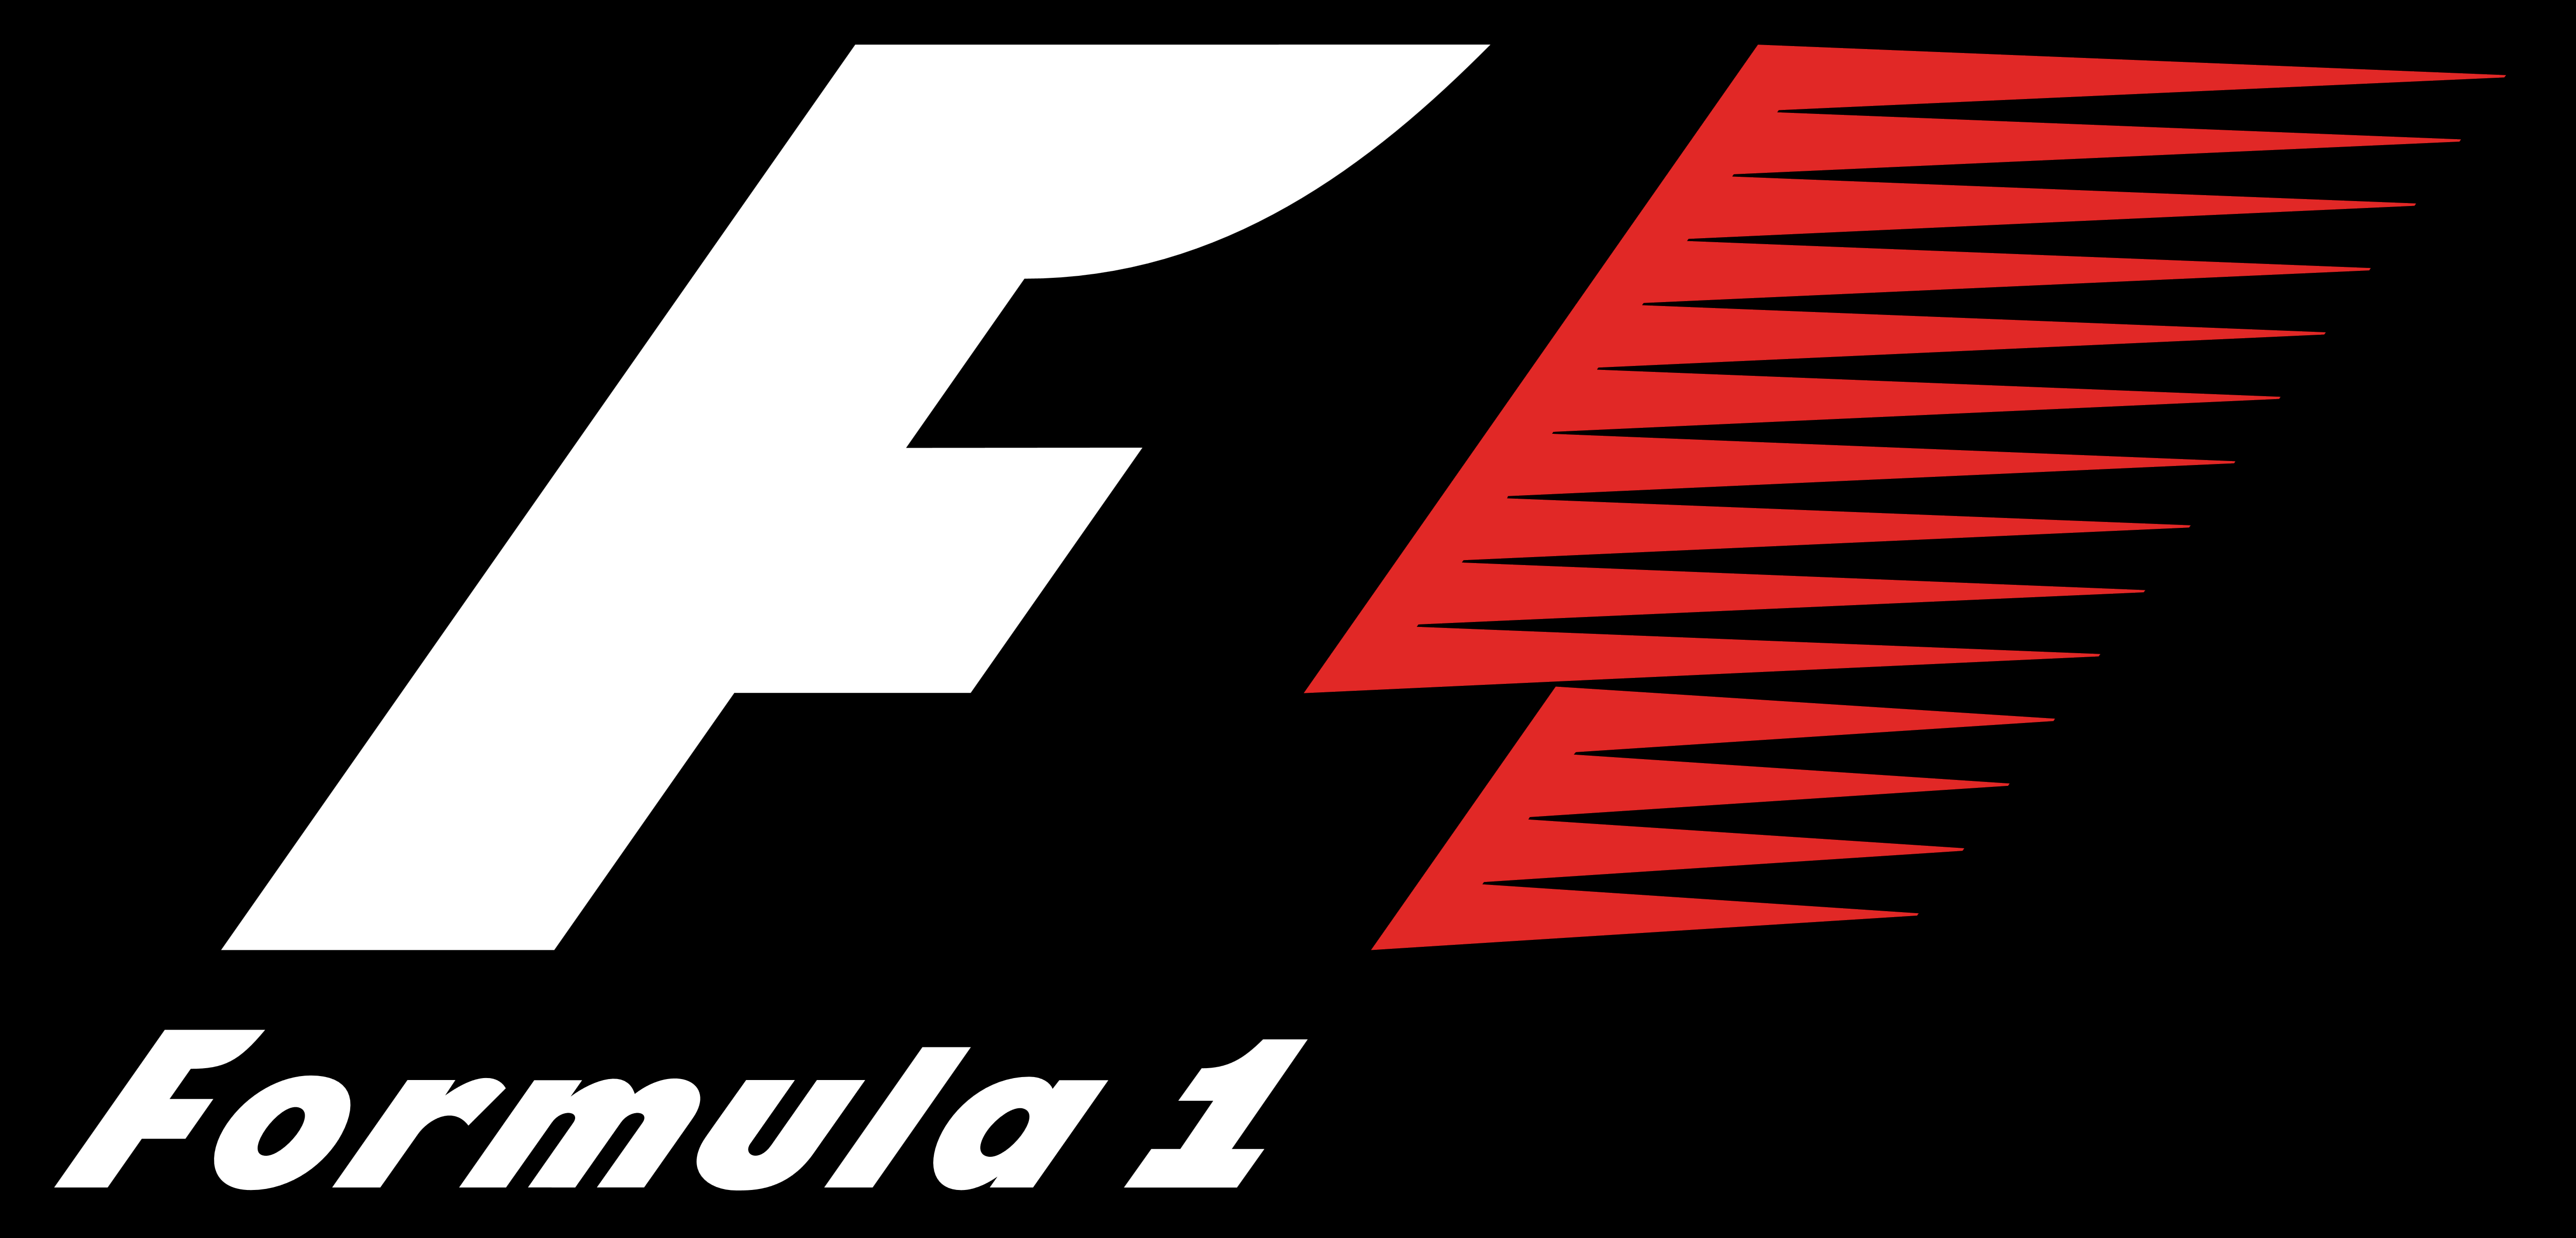 Formula 1 Logos Download